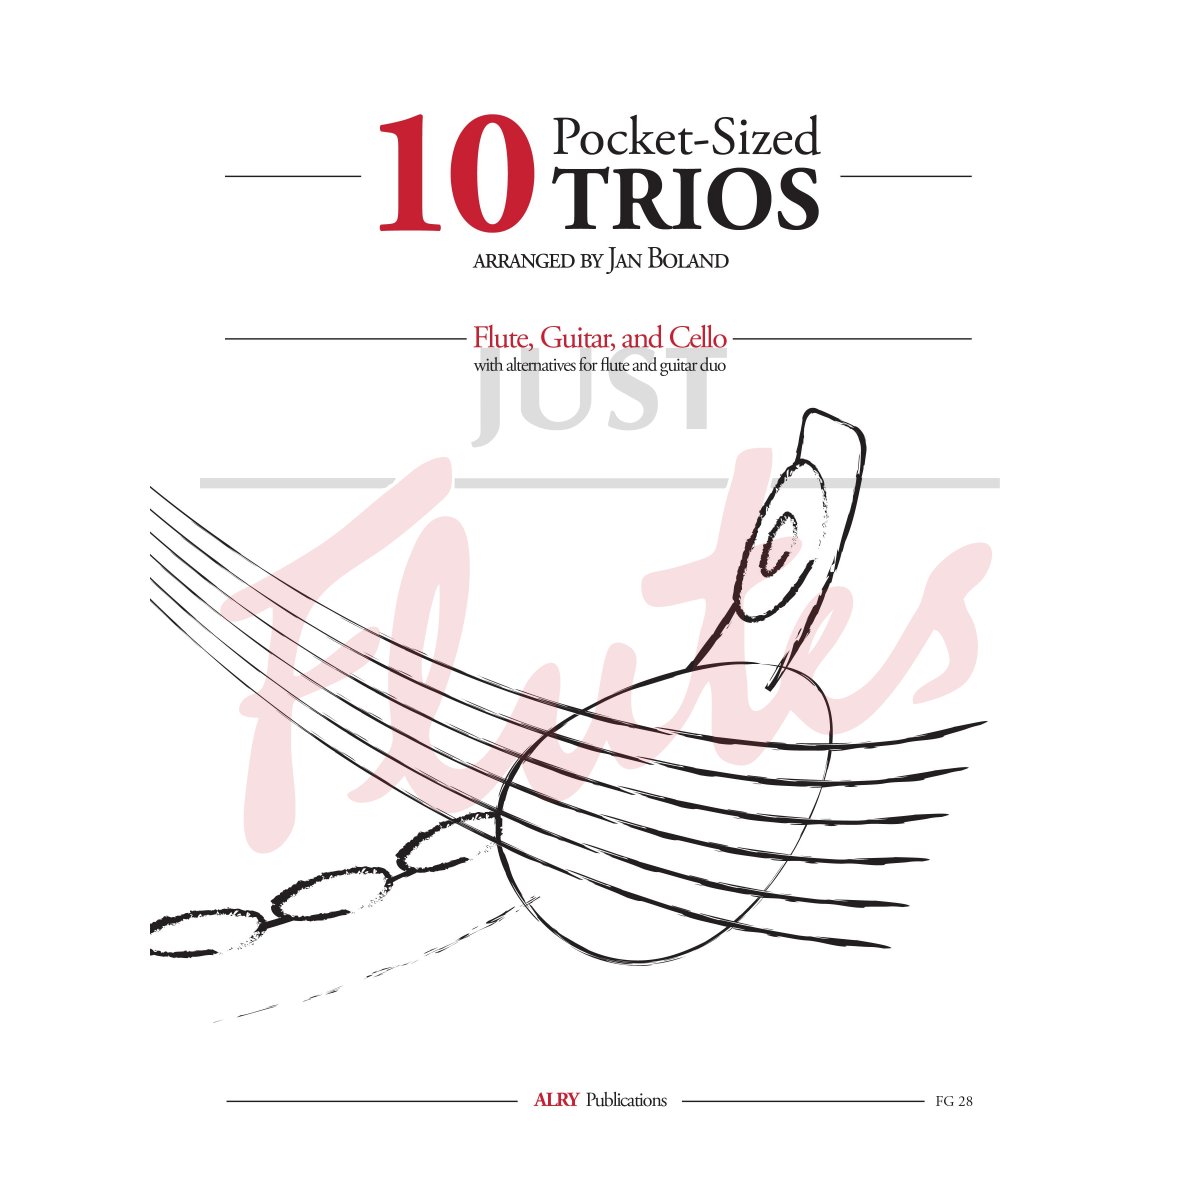 10 Pocket-Sized Trios